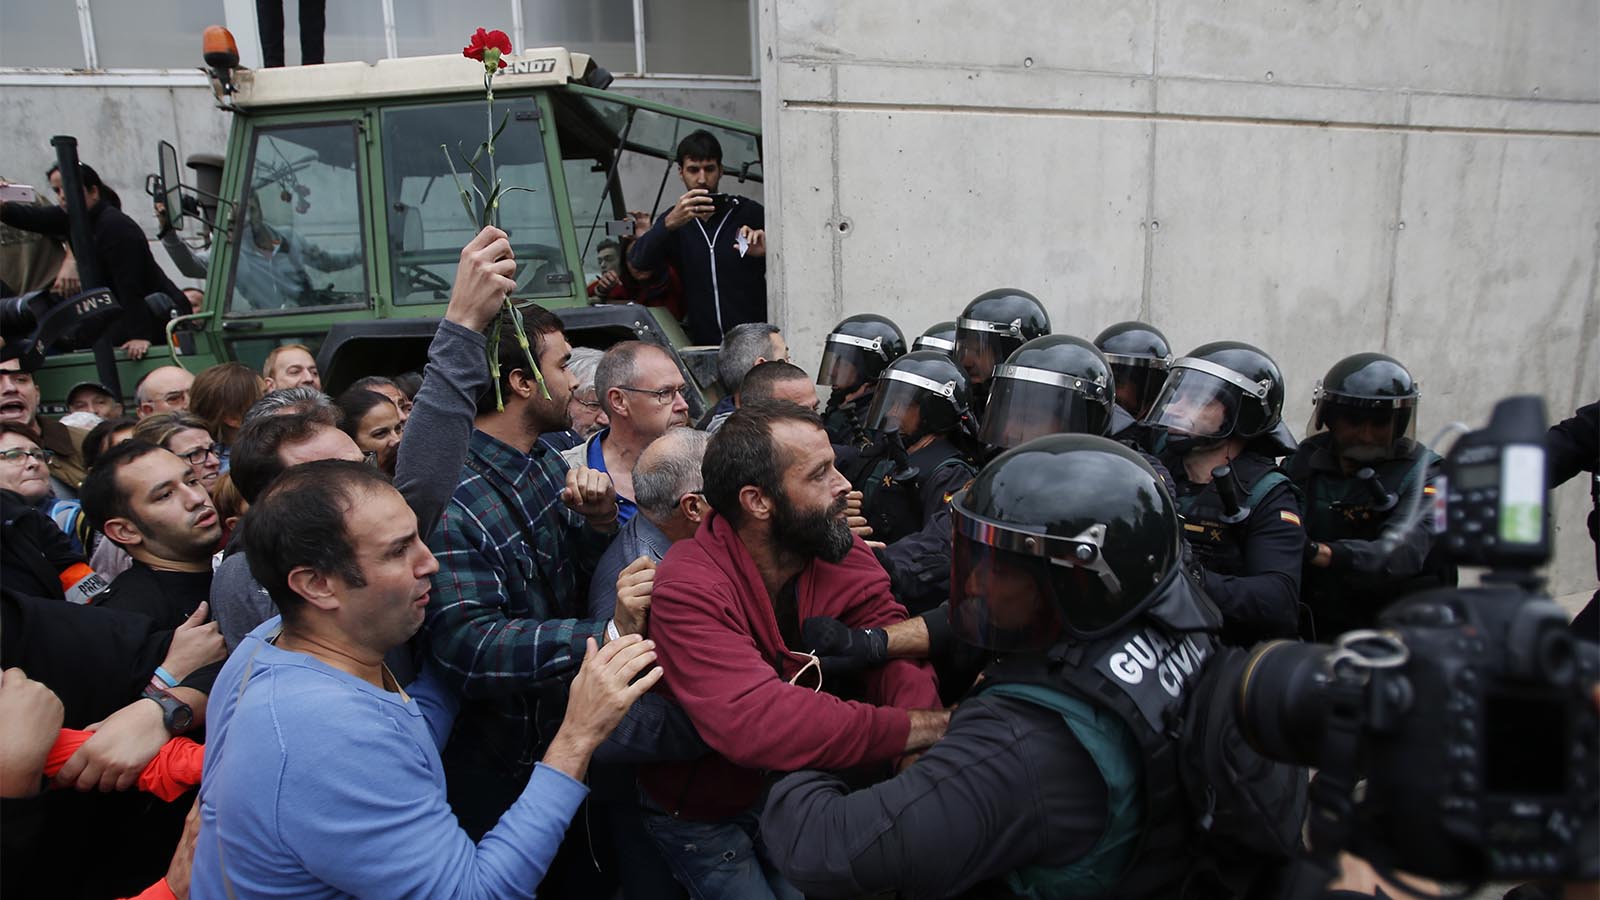 מצביעים קטאלנים נאבקים עם המשמר האזרחי המנסה למנוע מהם גישה לקלפי (צילום: AP Photo/Francisco Seco)